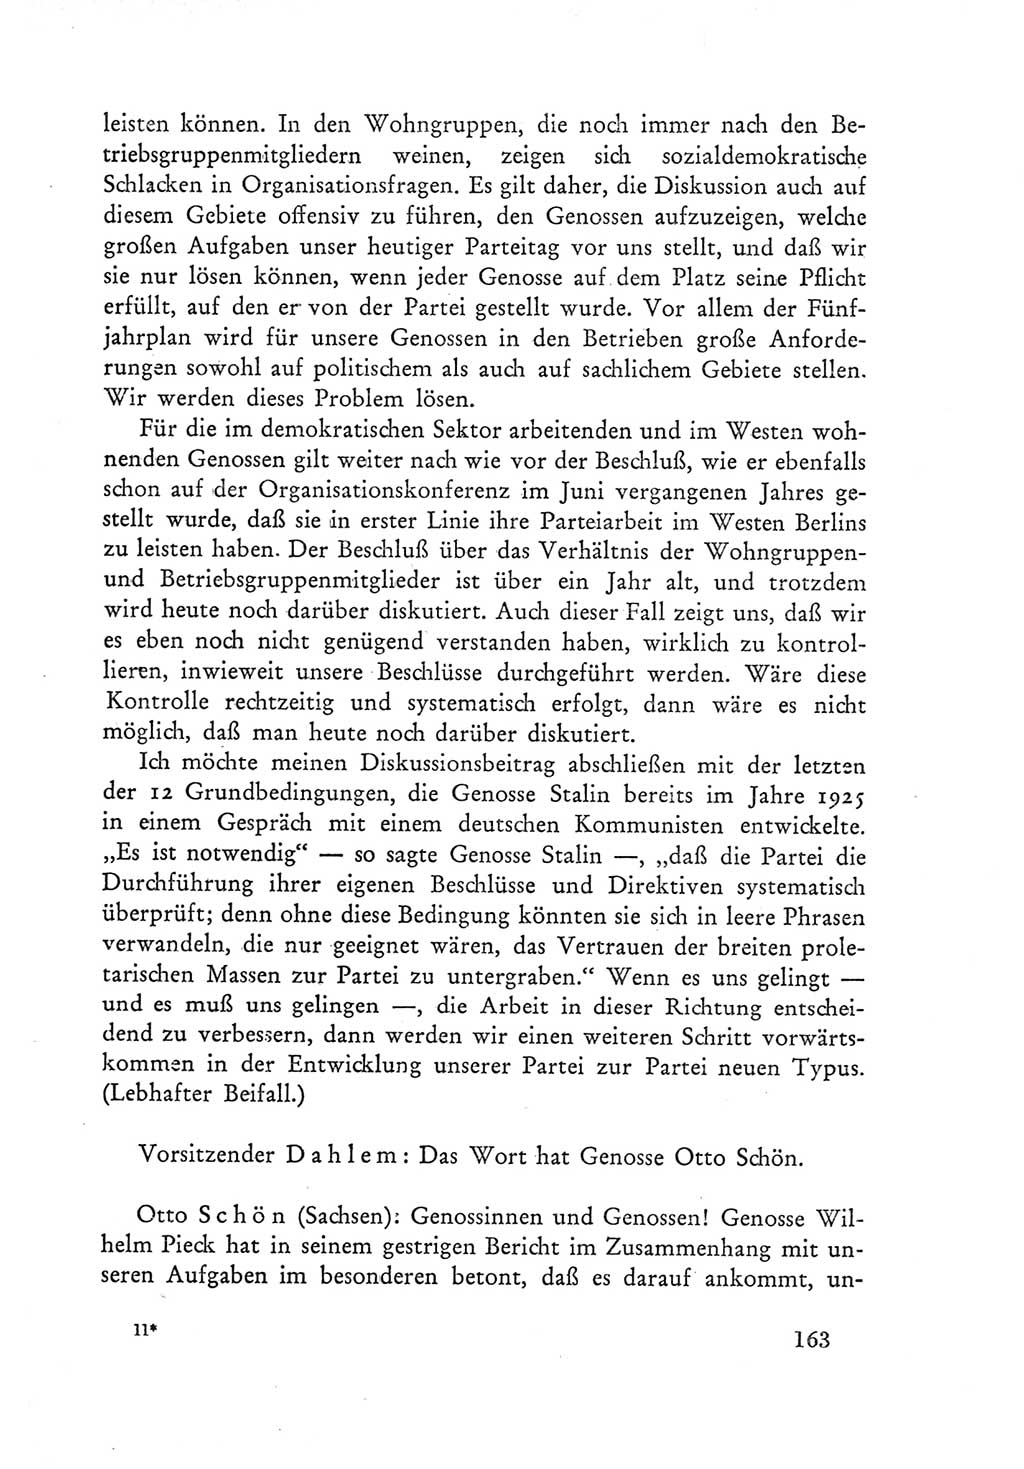 Protokoll der Verhandlungen des Ⅲ. Parteitages der Sozialistischen Einheitspartei Deutschlands (SED) [Deutsche Demokratische Republik (DDR)] 1950, Band 1, Seite 163 (Prot. Verh. Ⅲ. PT SED DDR 1950, Bd. 1, S. 163)